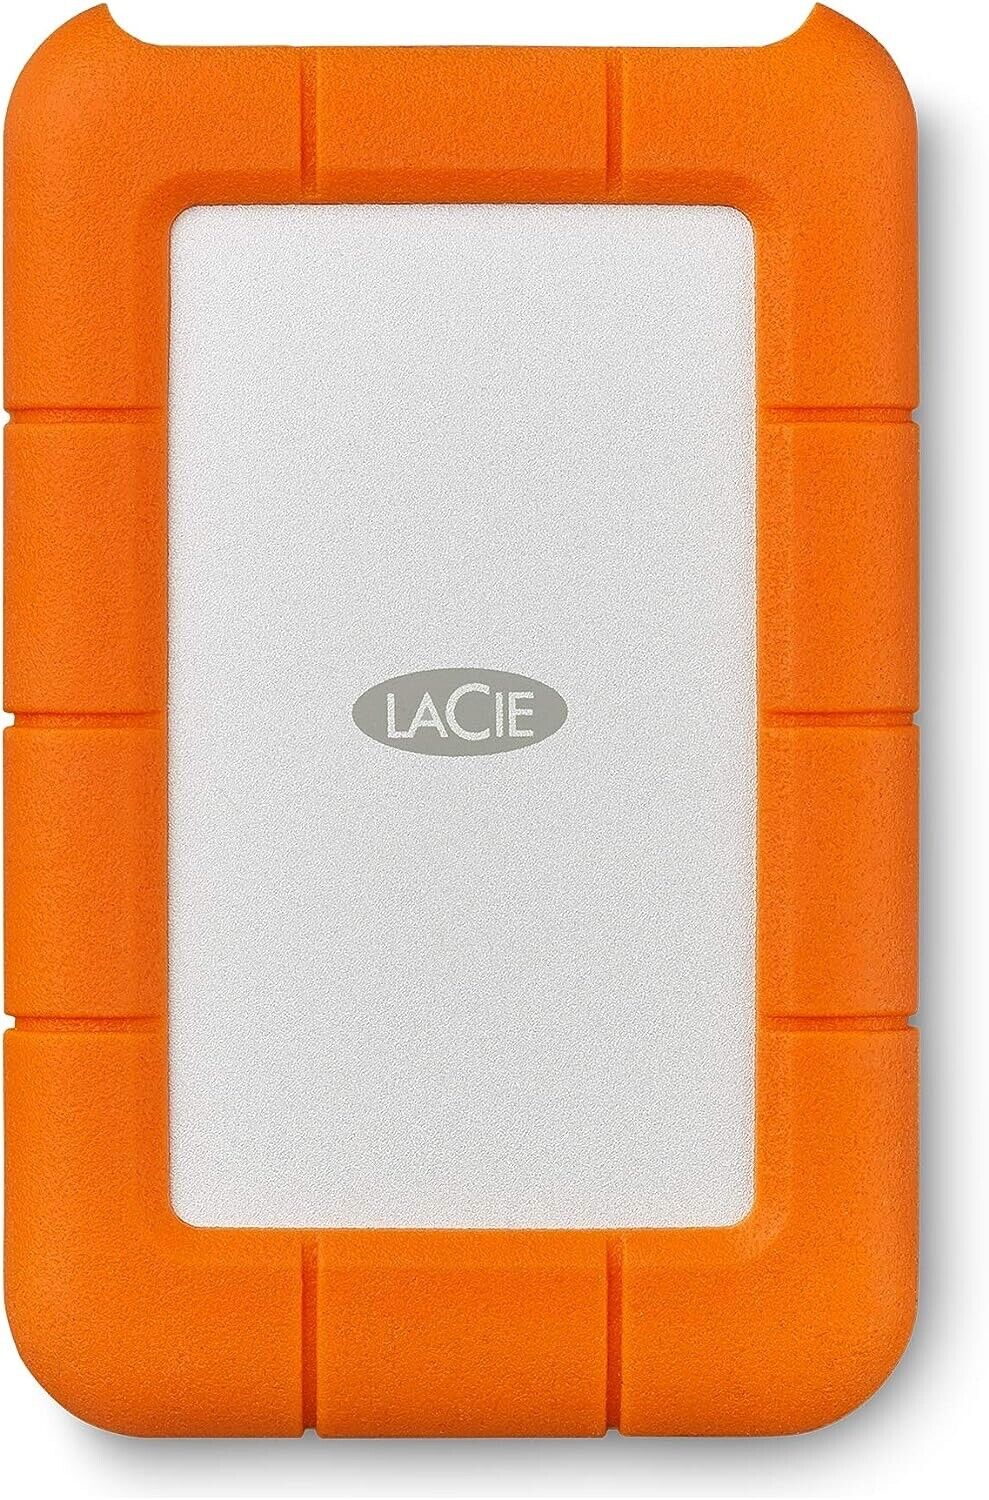 LaCie Rugged Mini 2TB USB 3.0 External HDD  Portable New